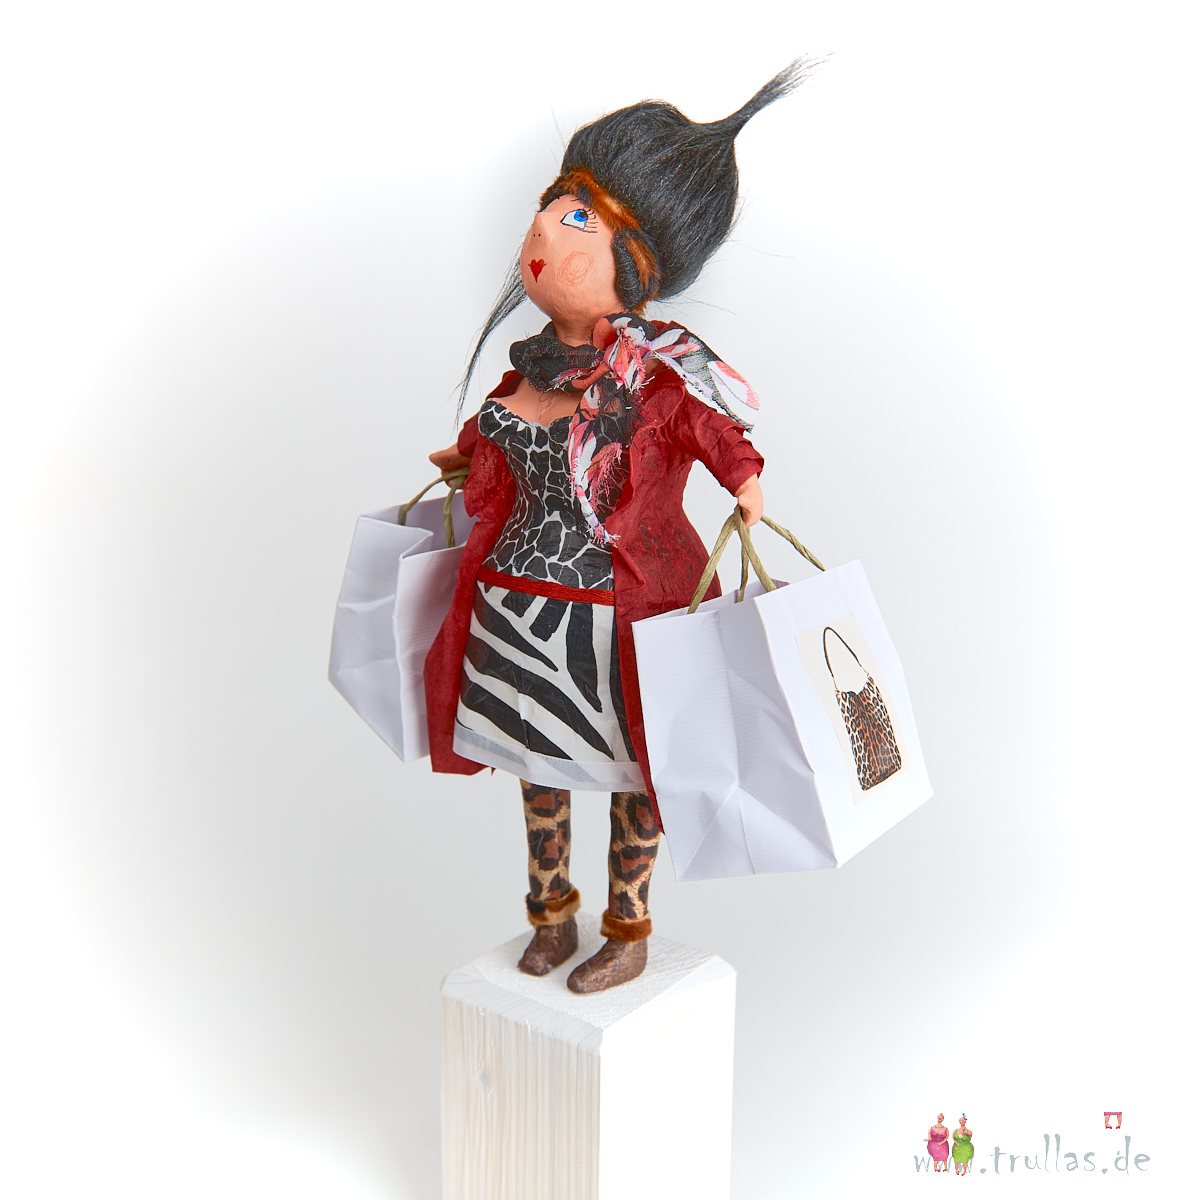 Shopping-Trulla - Flora ist eine handgefertigte Figur aus Pappmachee. Trullas sind Geschenkideen fur Menschen die handgemachte Kunst schätzen.